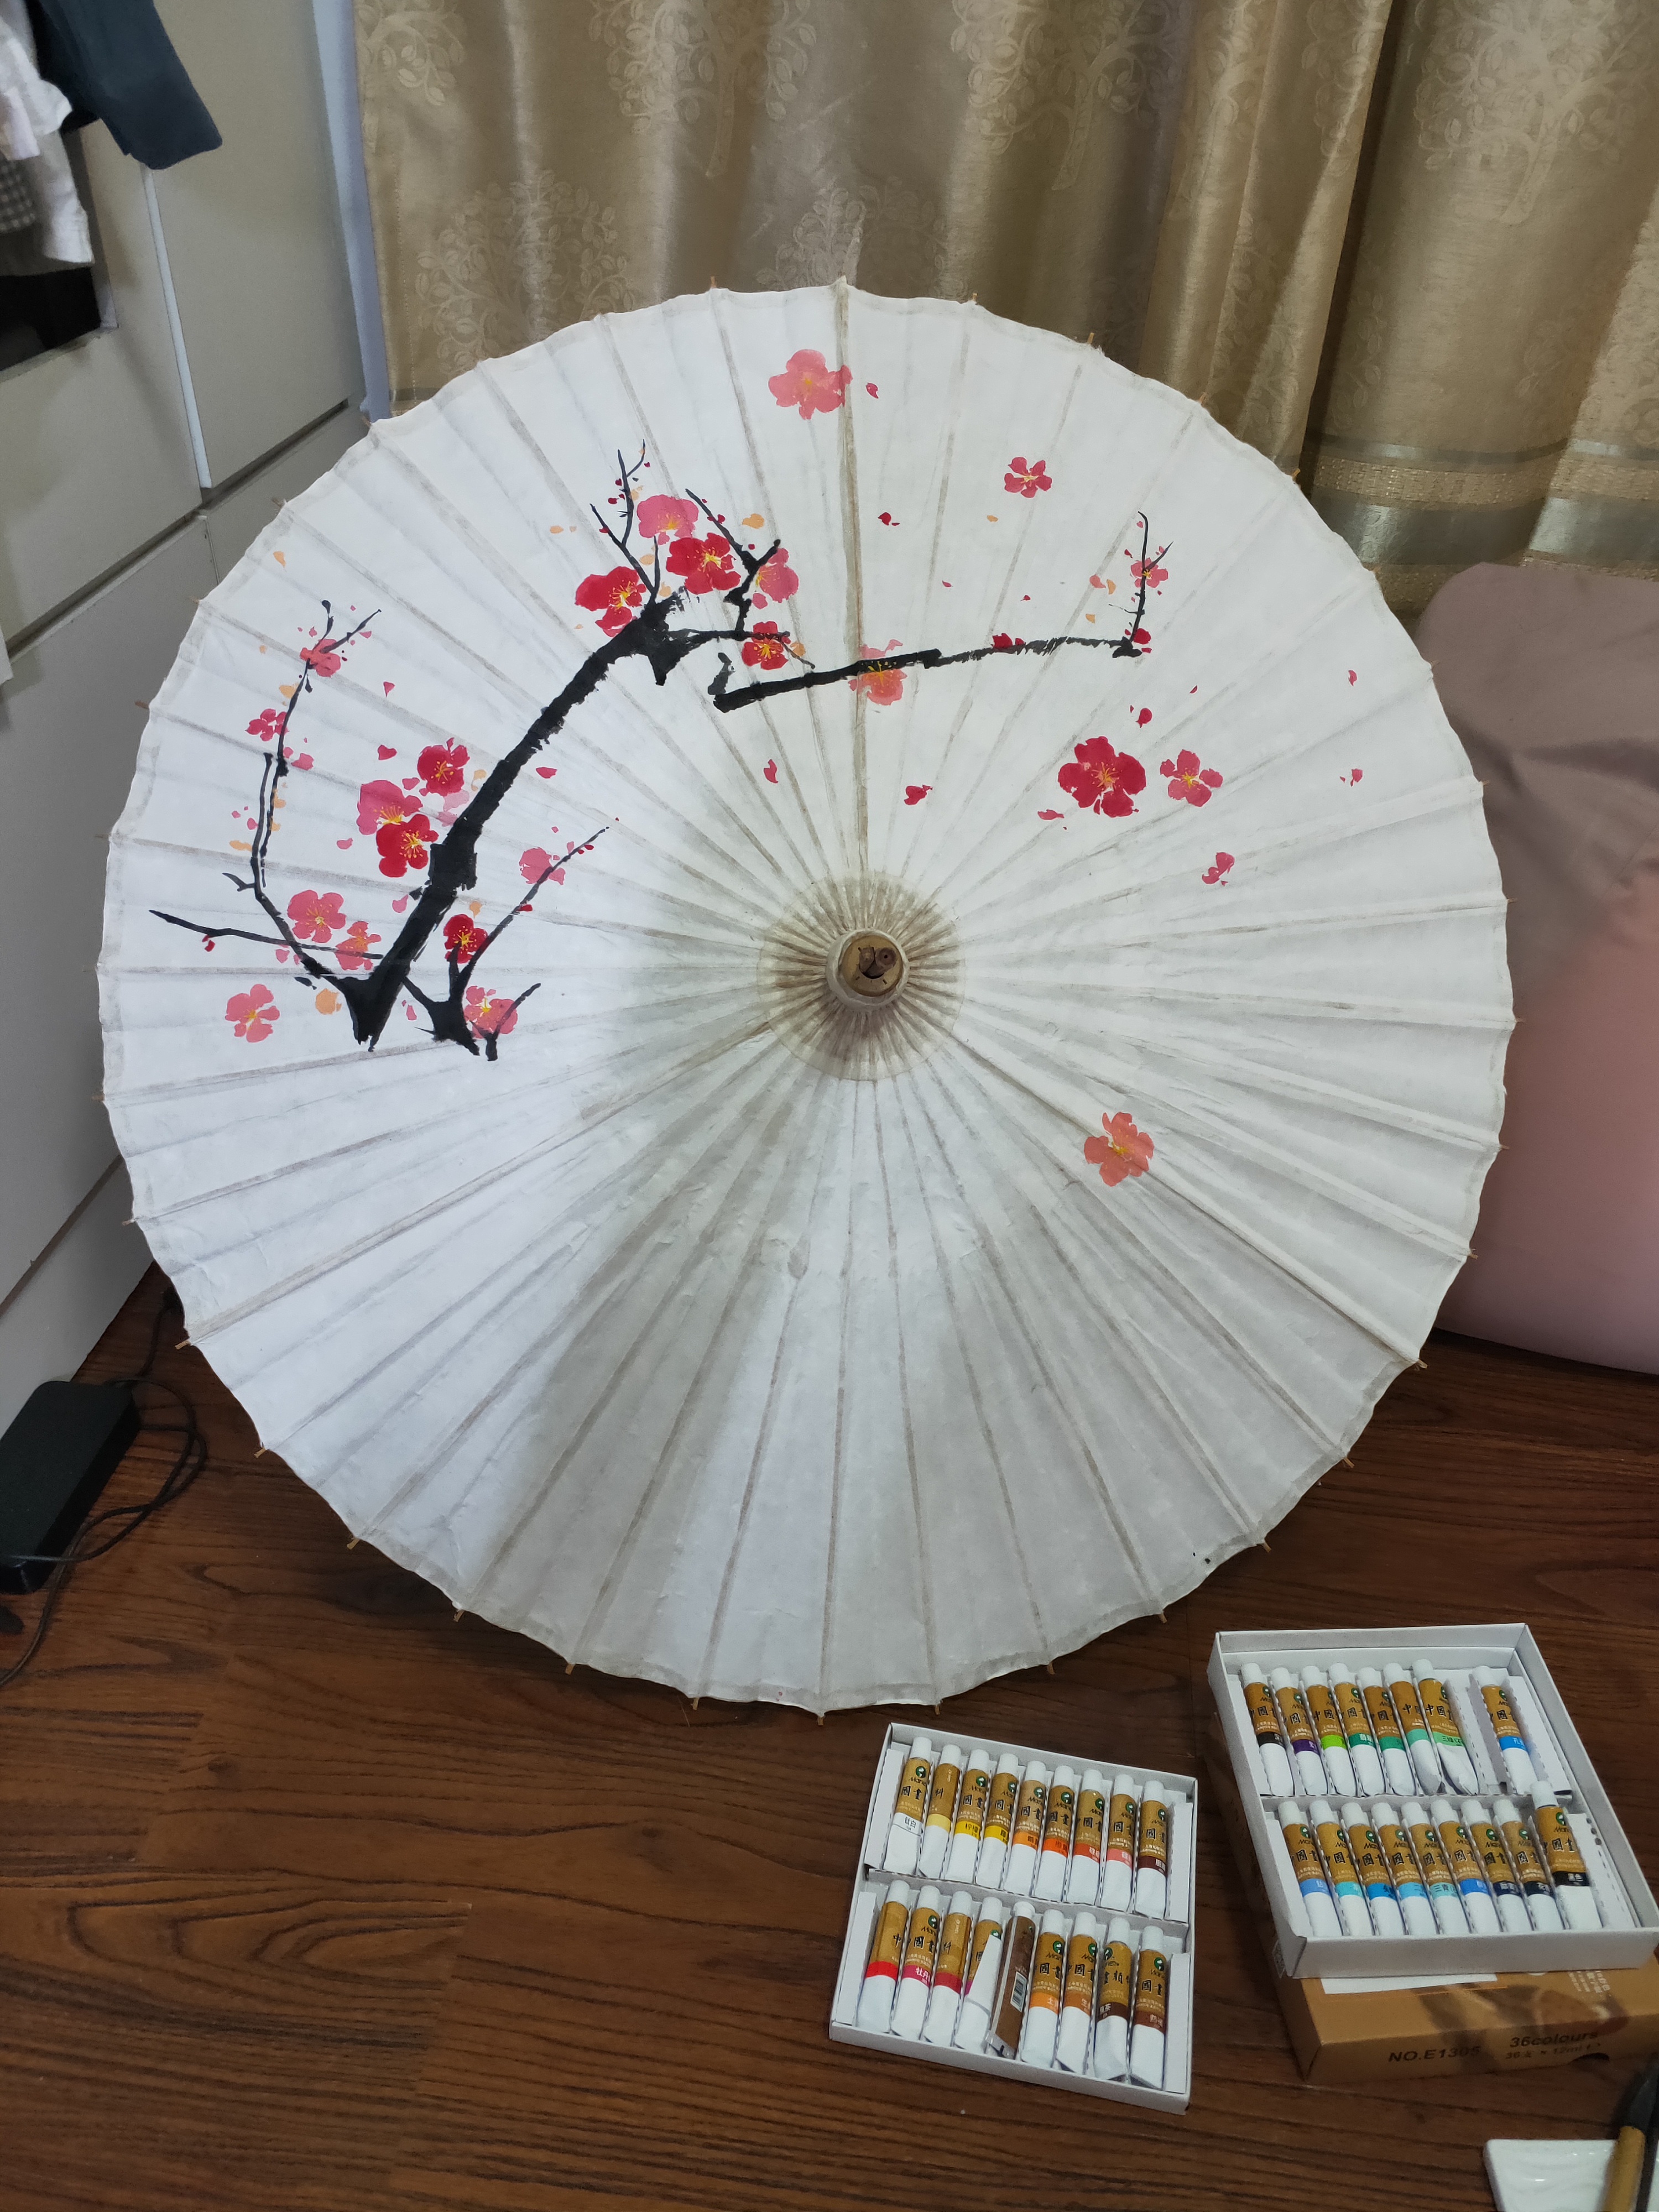 创意雨伞折叠伞变色哪种牌子比较好 价格